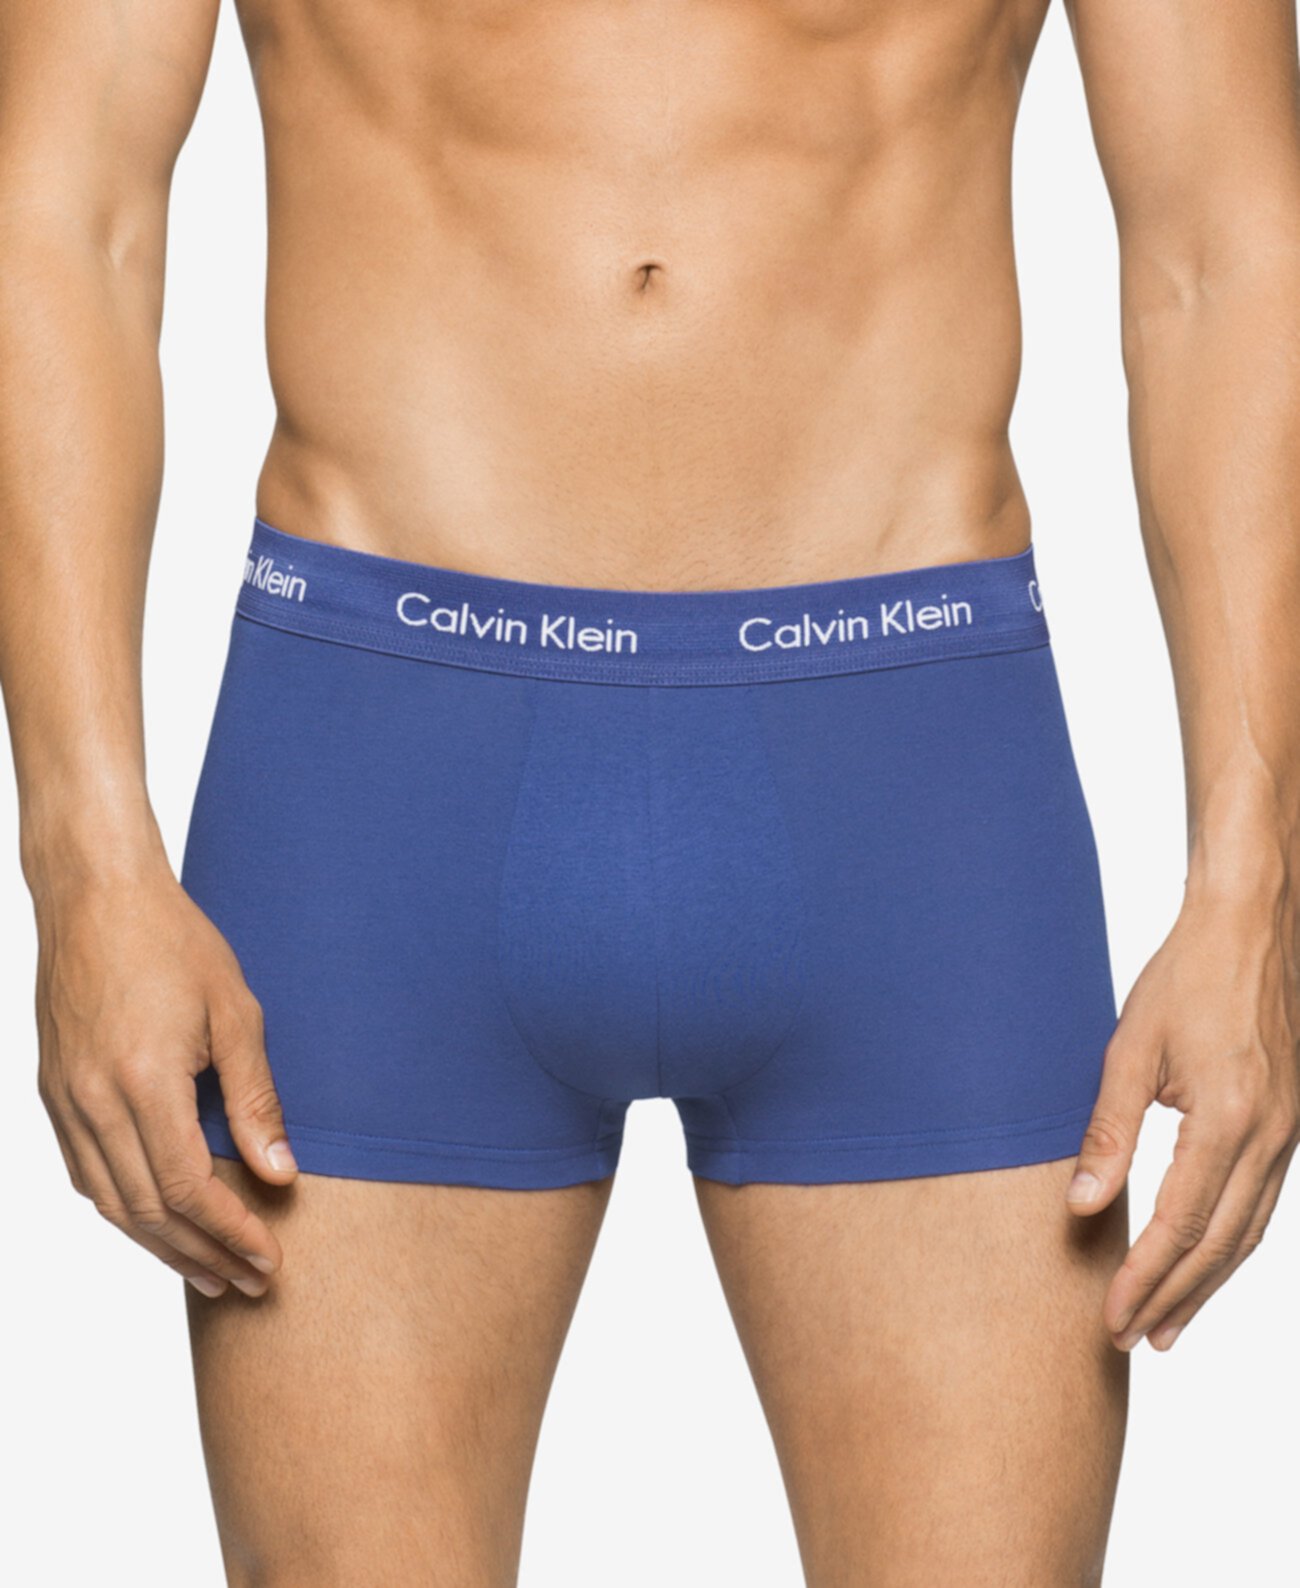 Мужские хлопчатобумажные эластичные невысокие сундуки, 3 упаковки, NU2664 Calvin Klein